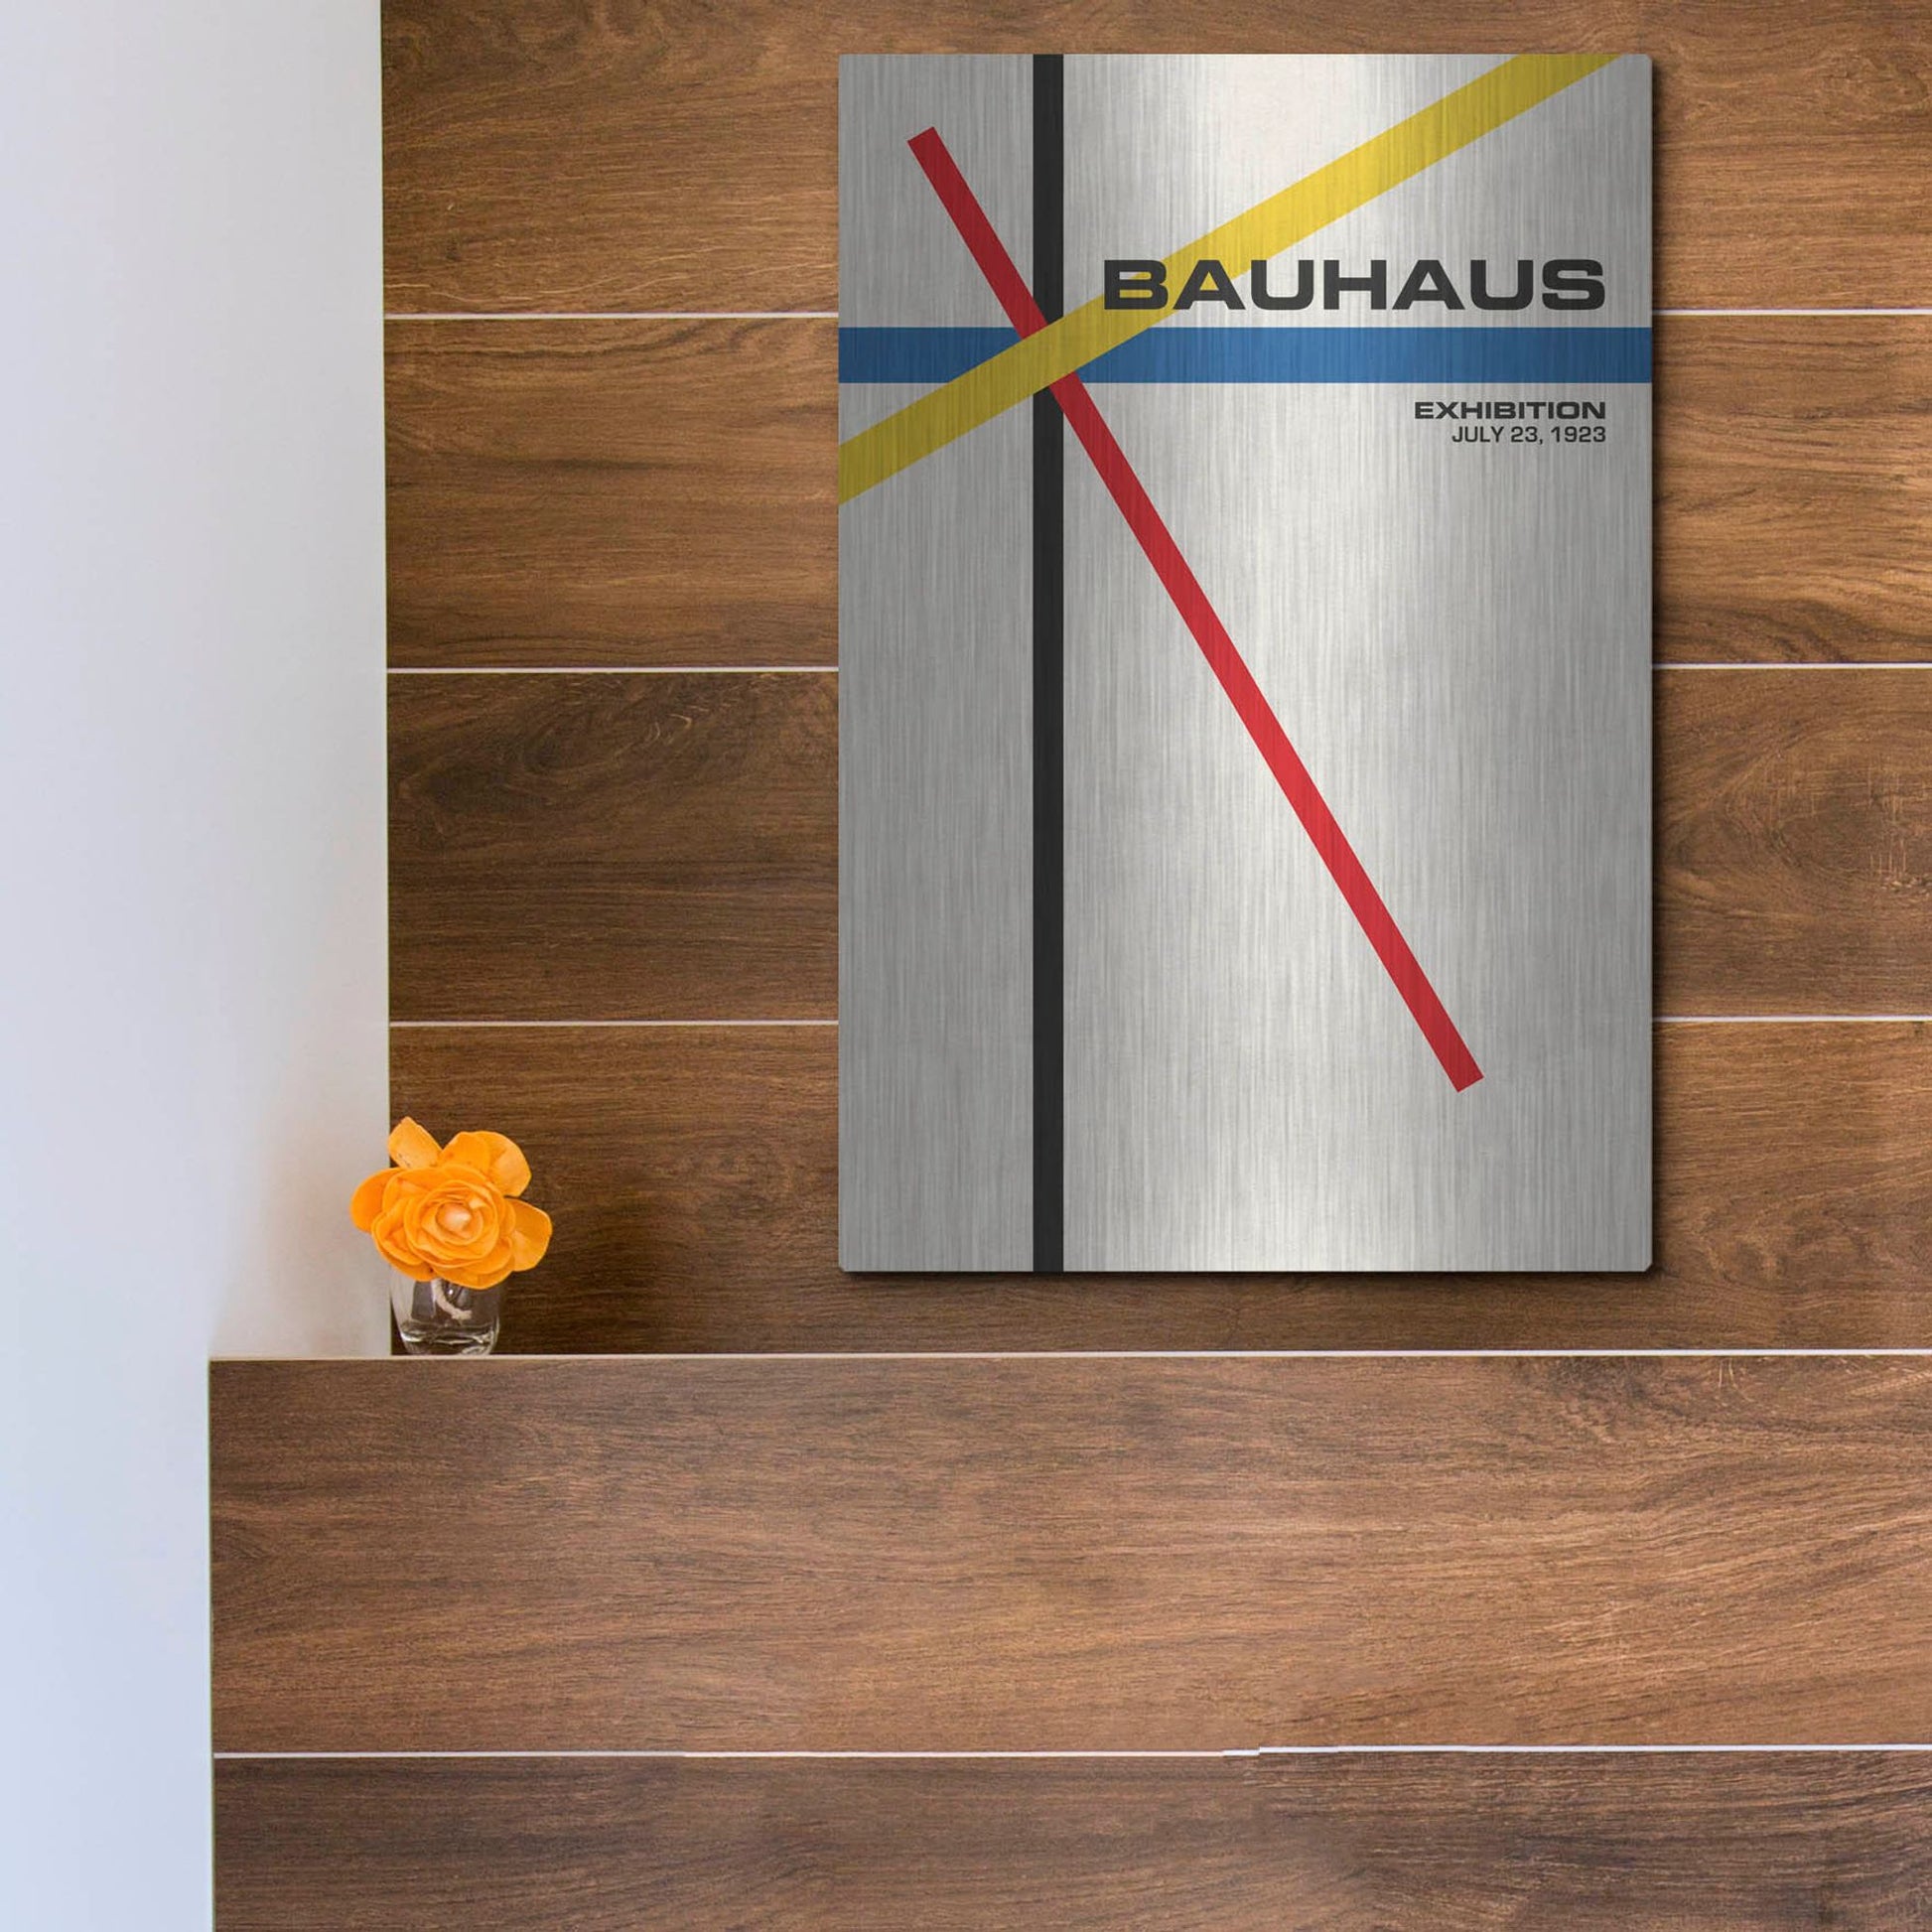 Luxe Metal Art 'Bauhaus 5' by Gary Williams, Metal Wall Art,12x16